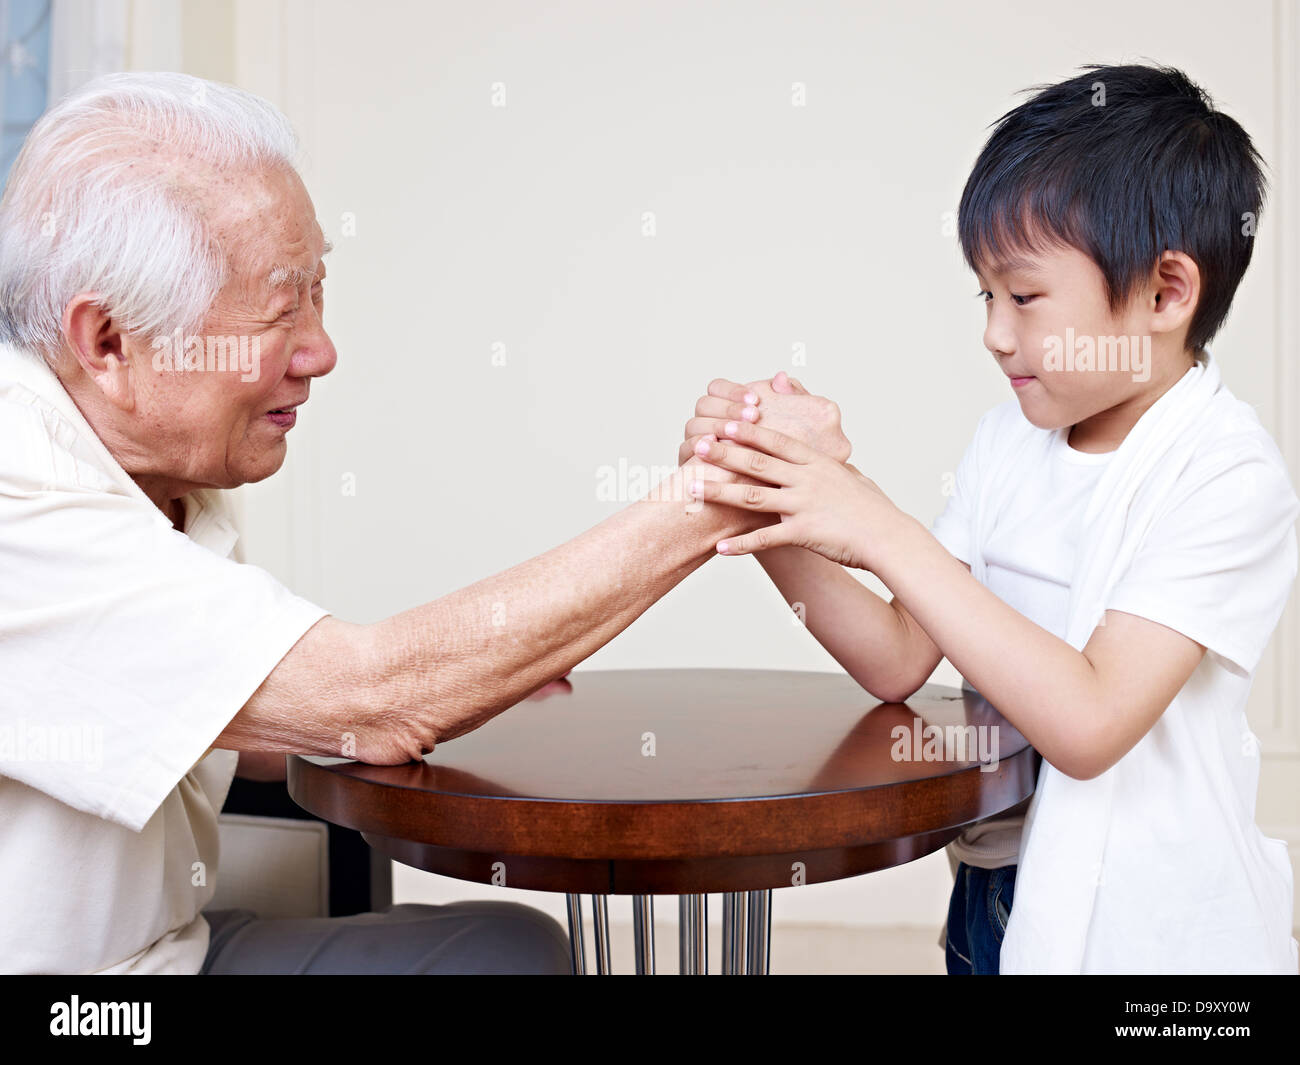 grandpa and grandson Stock Photo